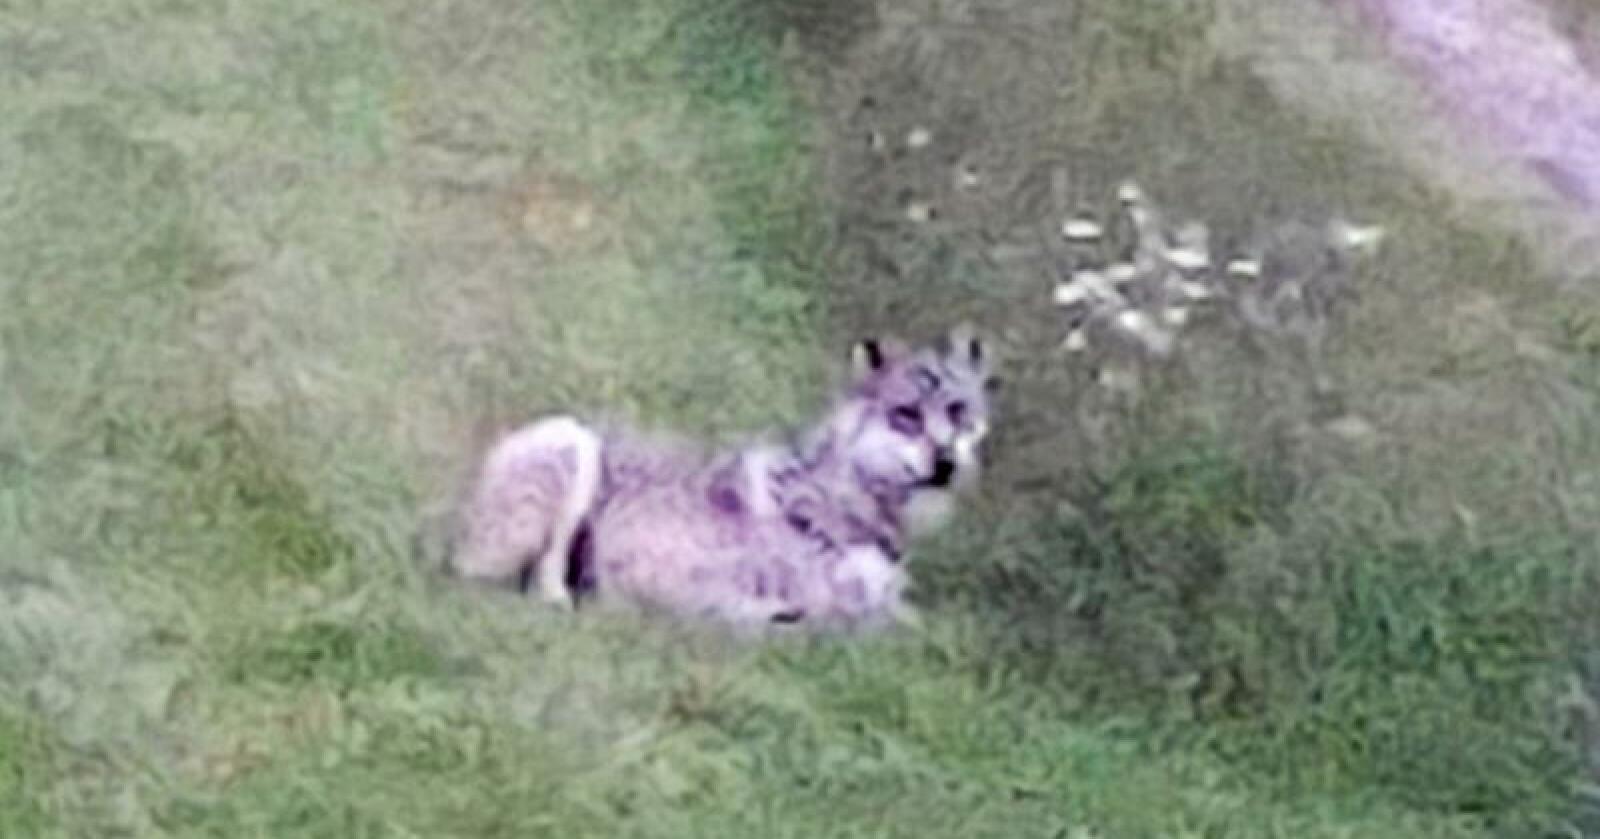 Denne ulven ble fotografert 400 meter fra Slettås sentrum tidligere i sommer. Foto: Ellen Haugsnes